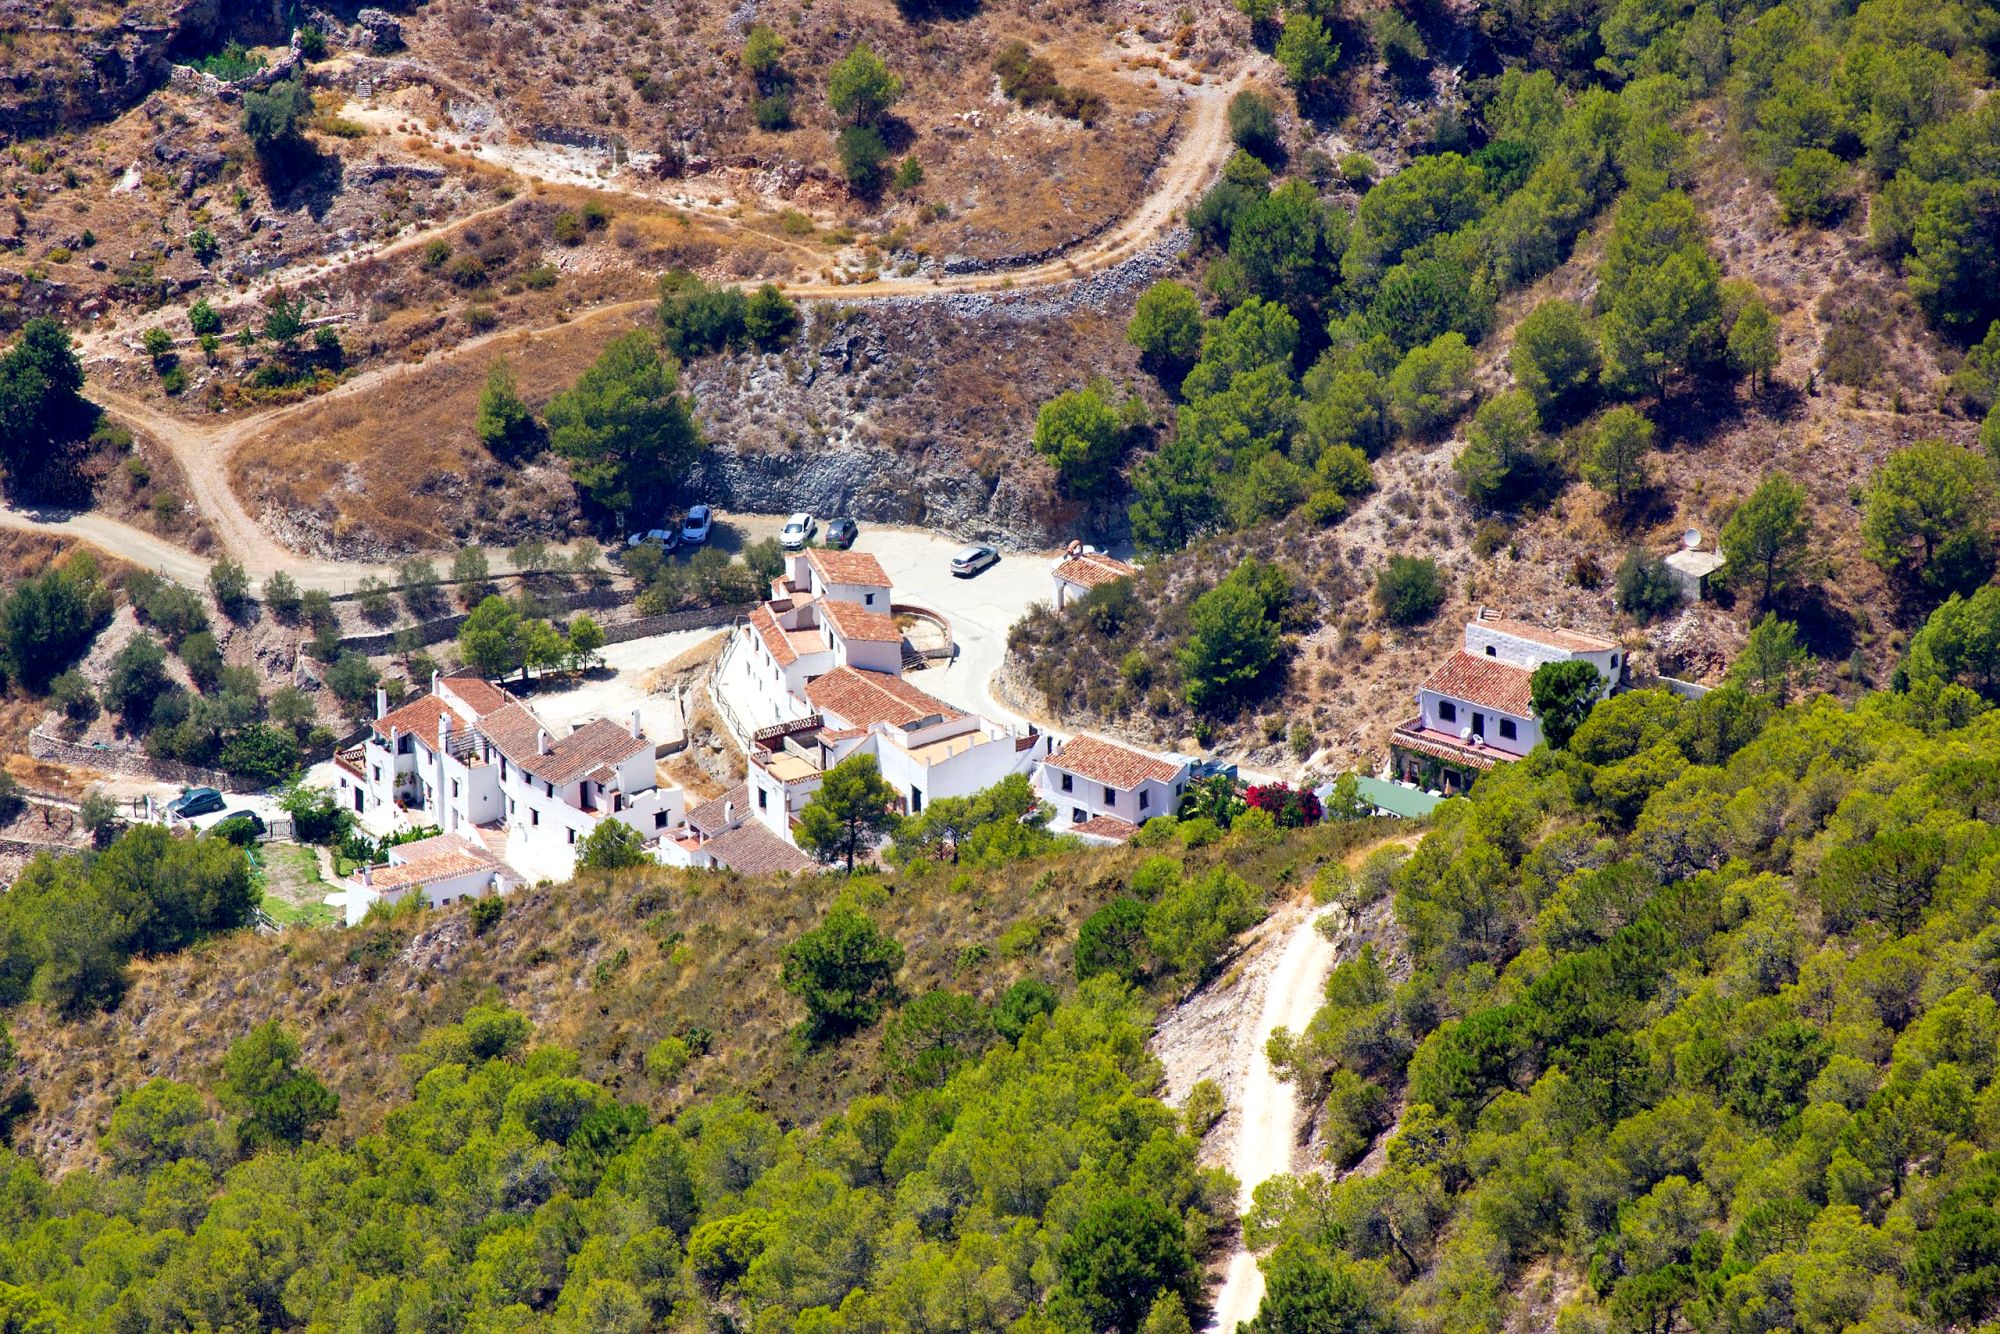 Aerial view of El Acebuchal, Spain